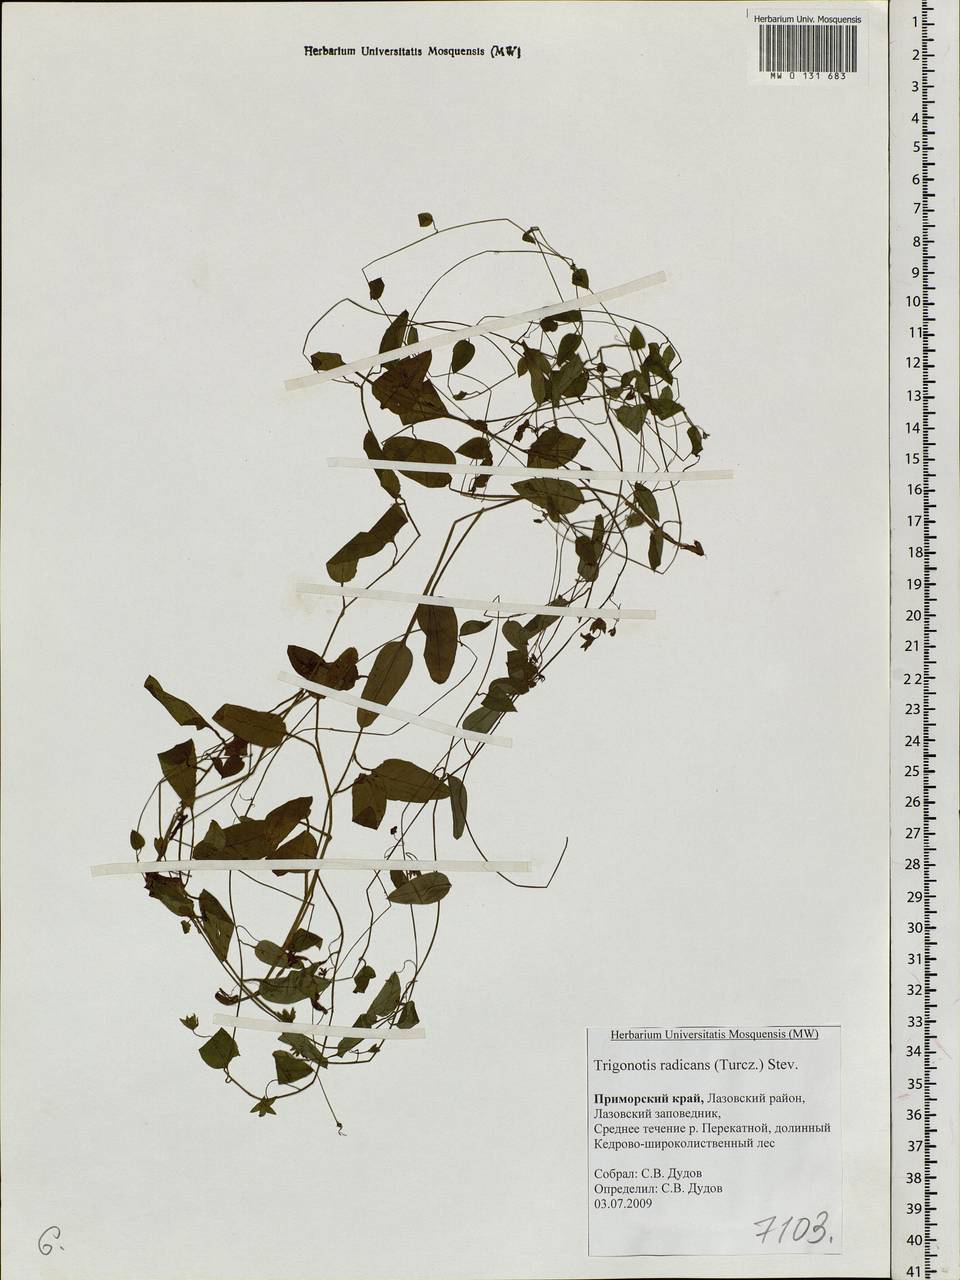 Trigonotis radicans subsp. sericea (Maxim.) Riedl, Siberia, Russian Far East (S6) (Russia)